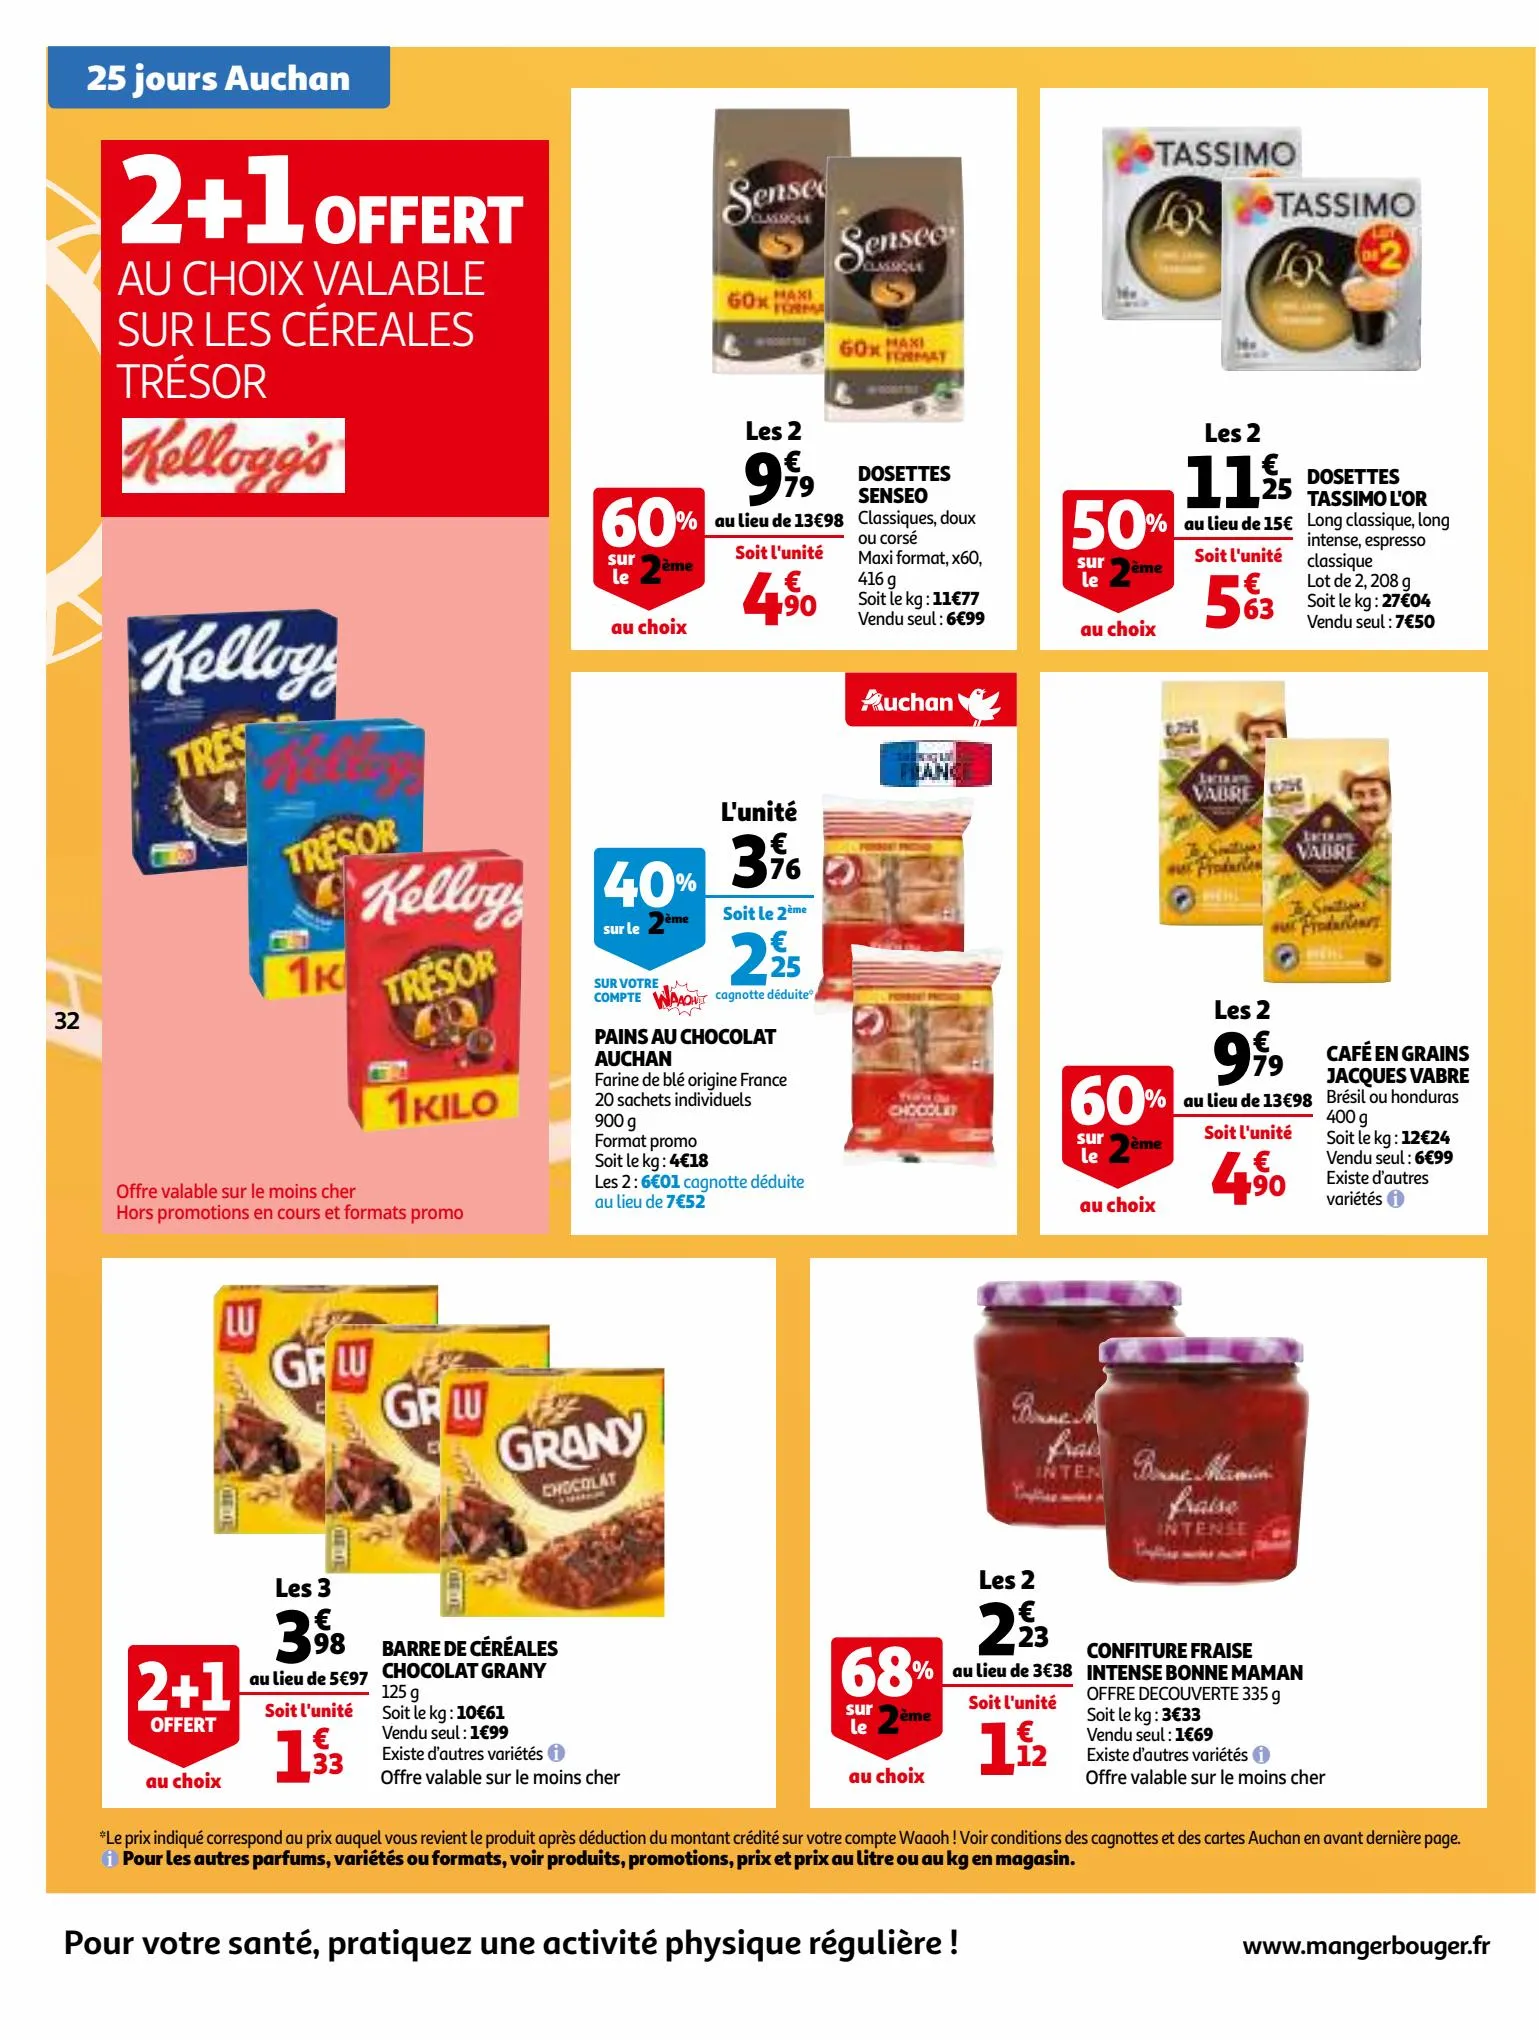 Catalogue 25 Jours Auchan, page 00032